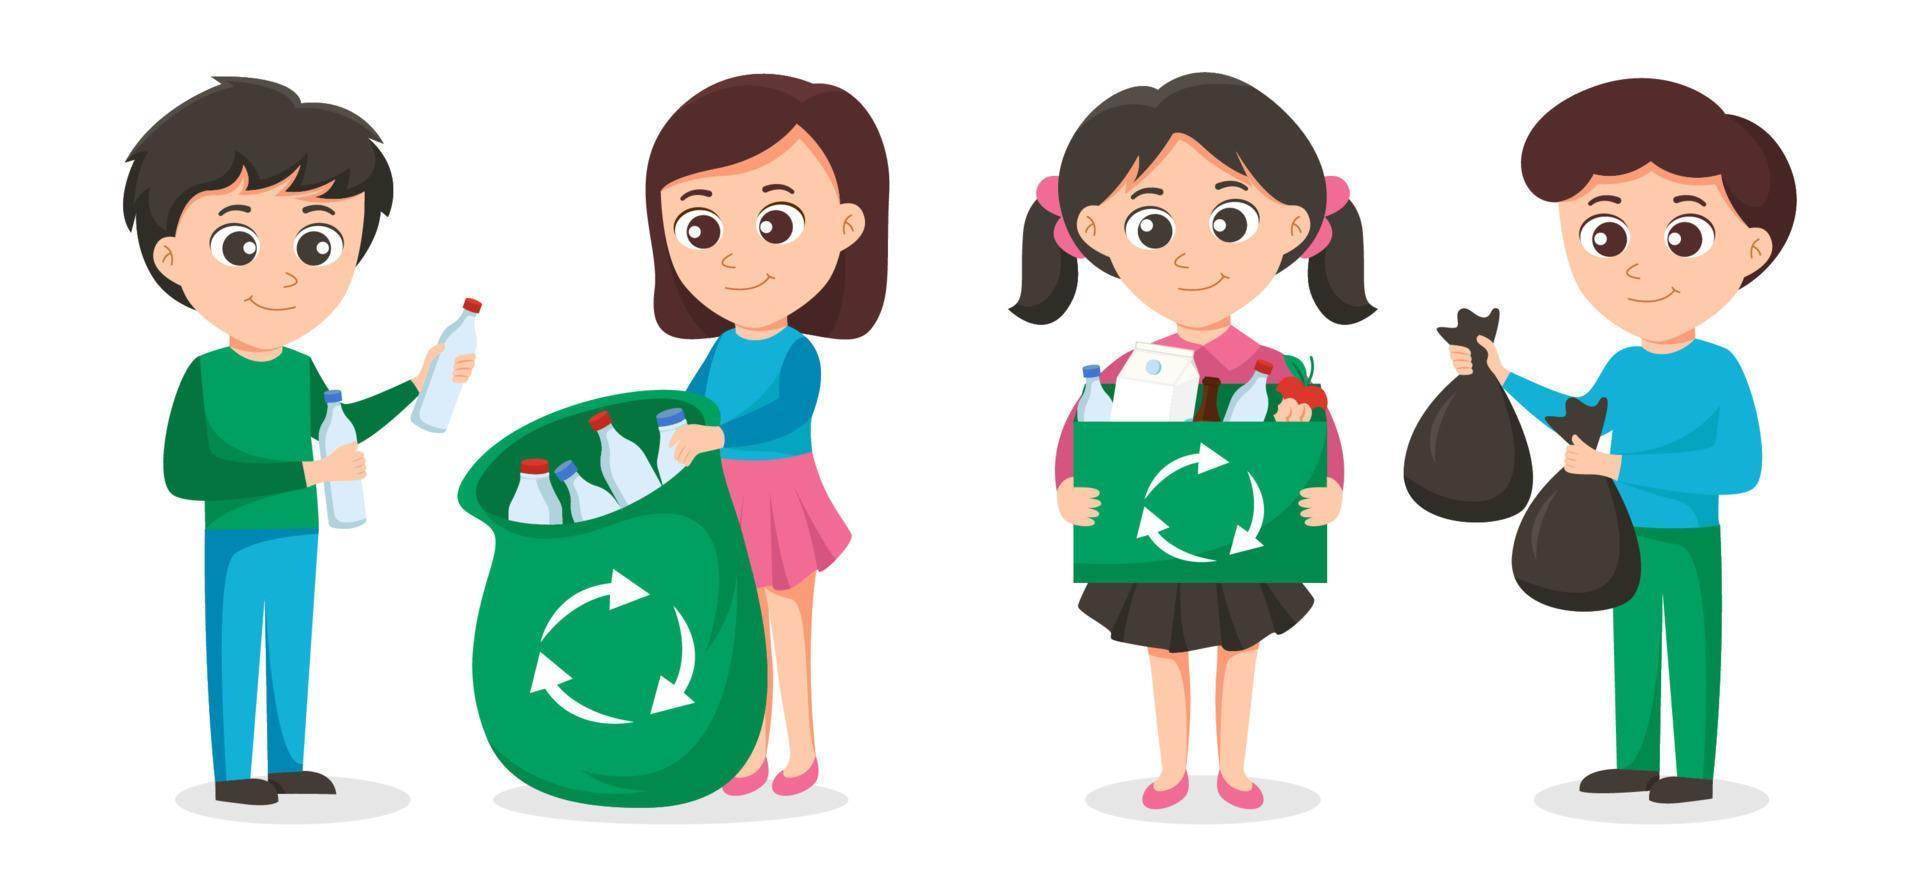 vrijwilliger werkzaamheid, vuilnis verzameling naar opslaan de wereld concept, vector illustratie. vrijwilligers van jong mensen met vuilnis Tassen. vrijwilligerswerk werken en milieu schoonmaken